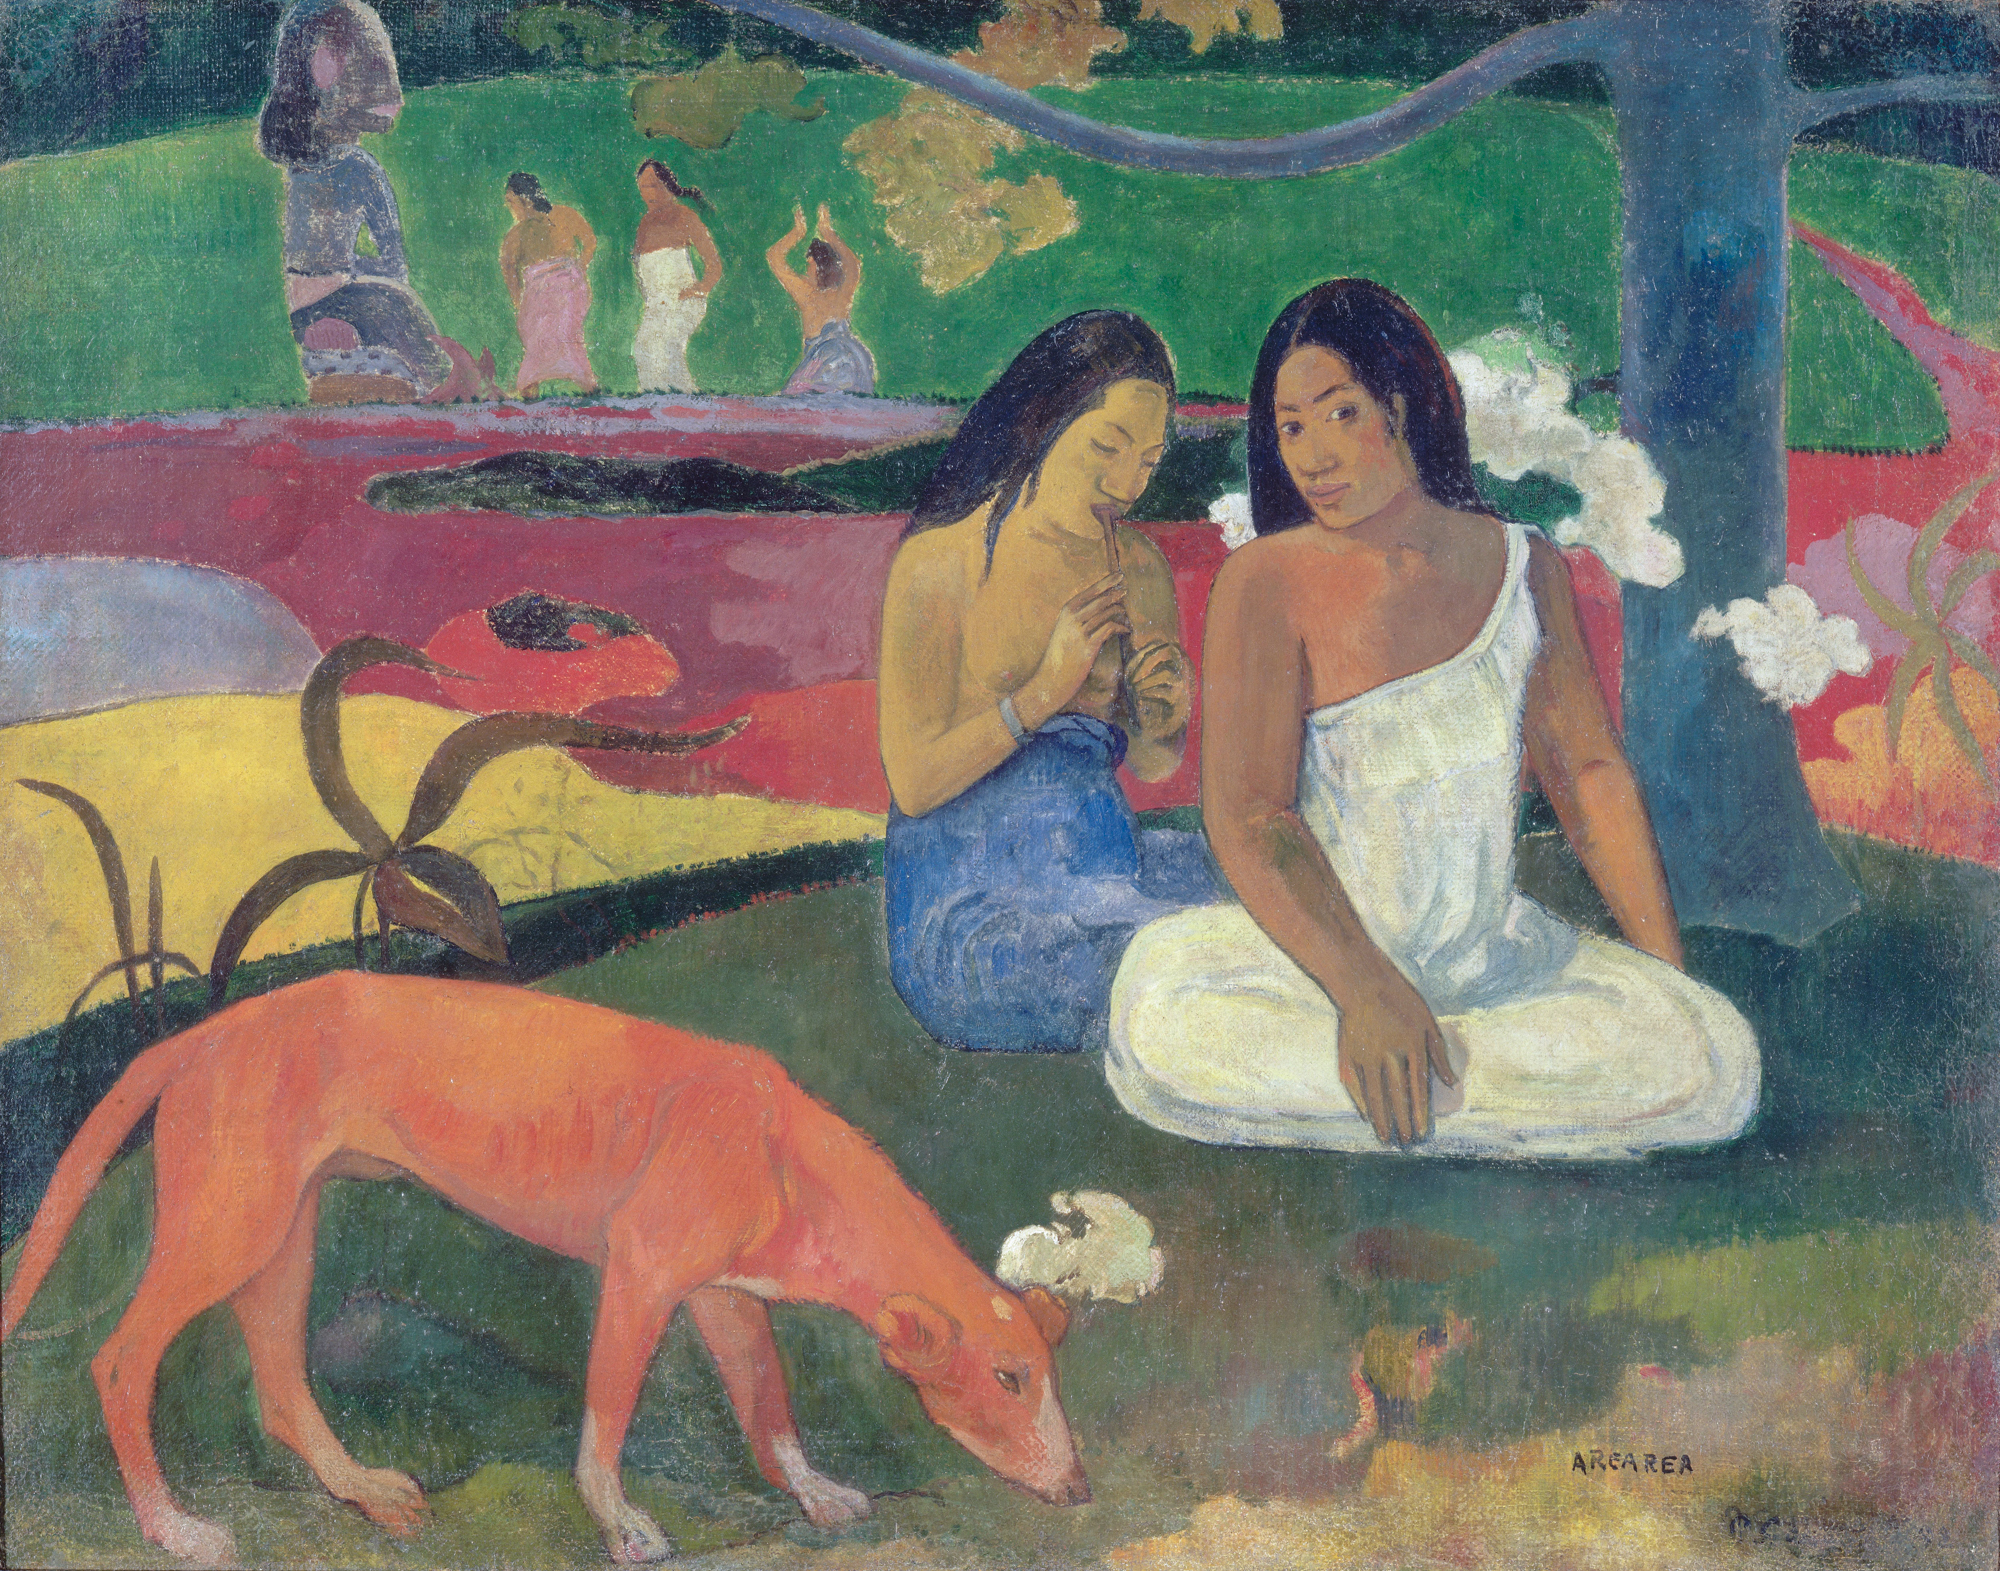 Arearea [Joyeusetés], Paul Gauguin